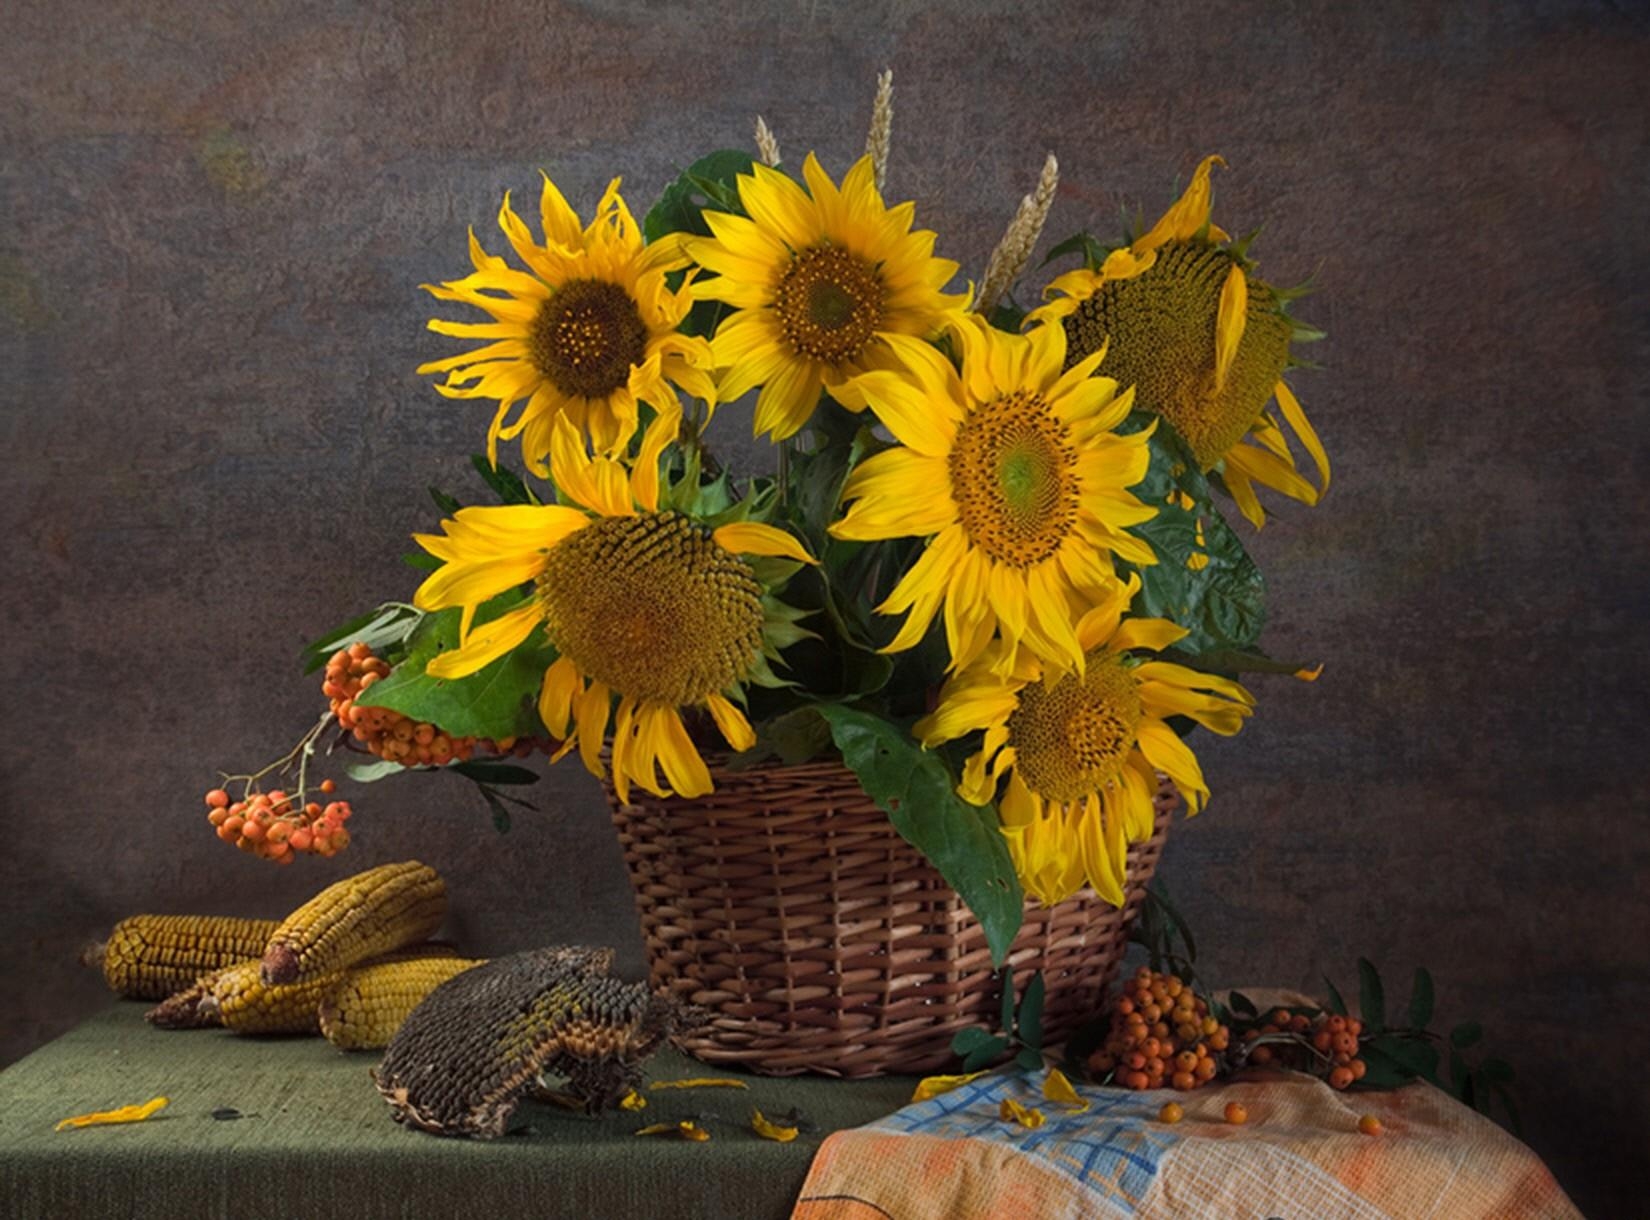 flowers, sunflowers, still life, basket, corn, rowan, seeds, sunflower seeds, maize